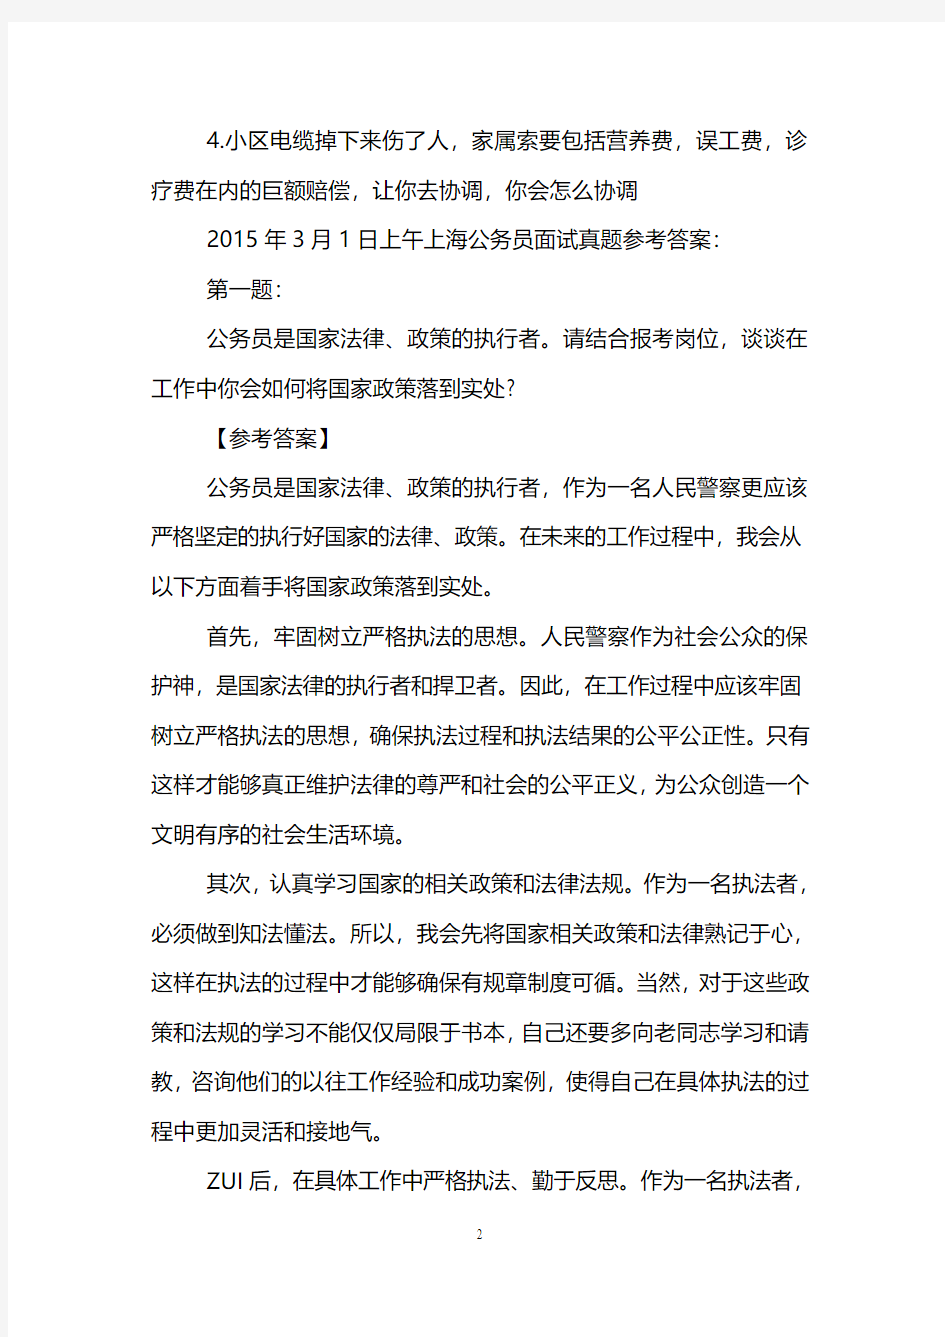 2015年上海公务员面试真题解析(3月1日)